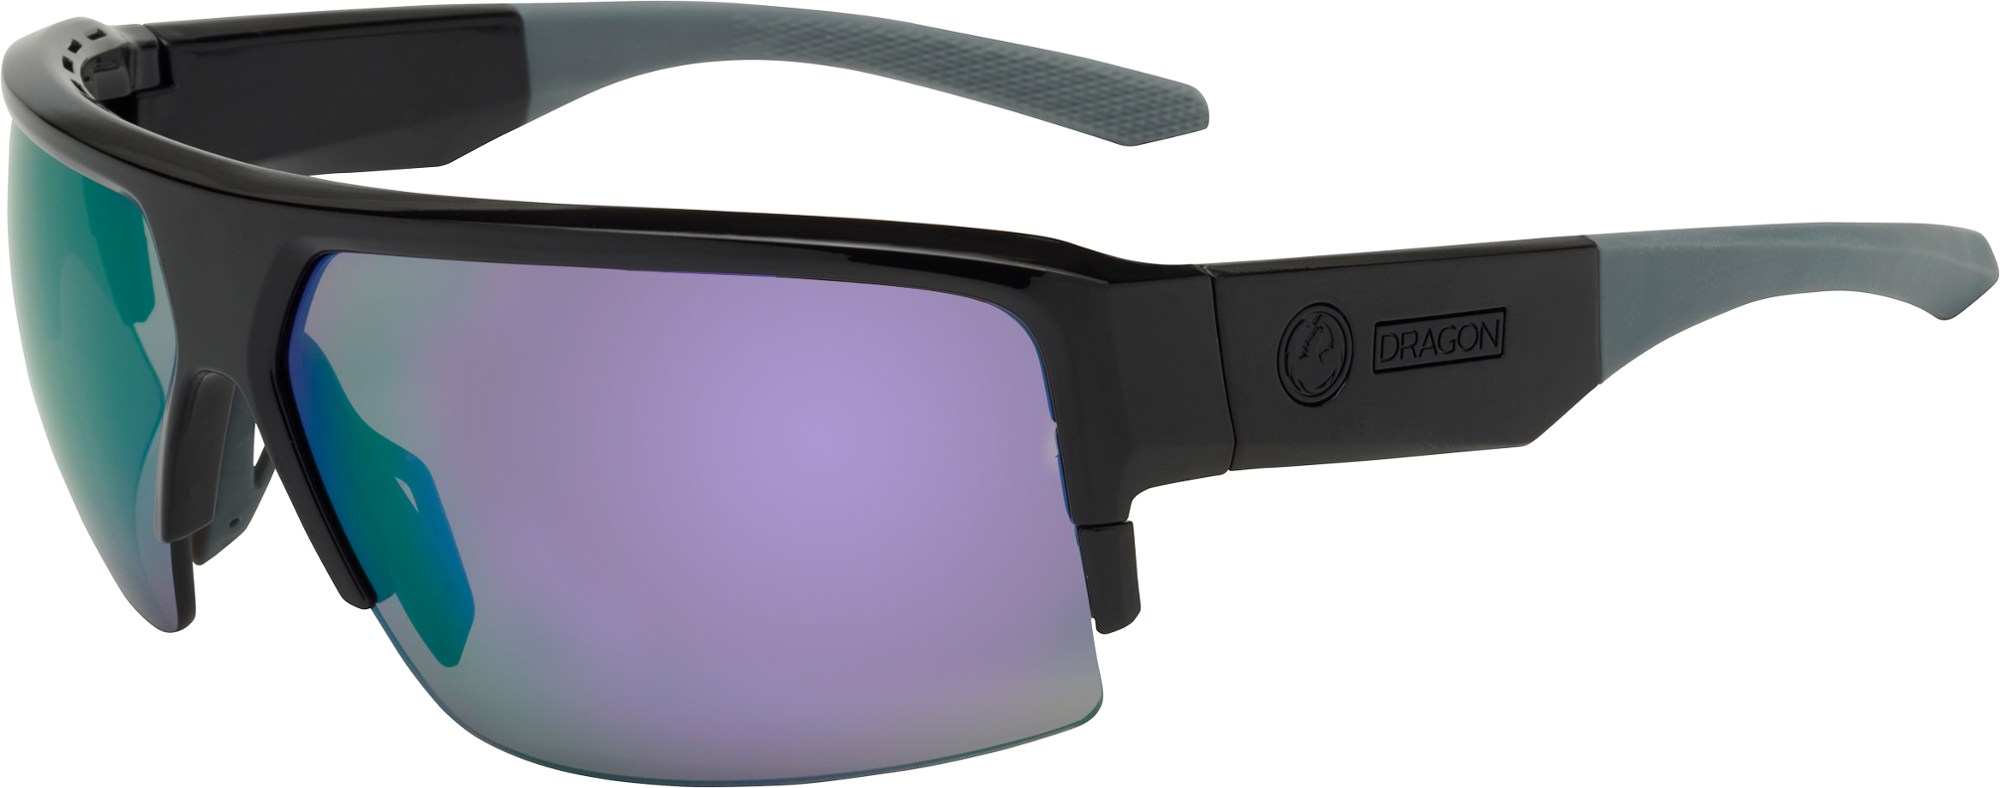 Солнцезащитные очки Ridge X Dragon, черный